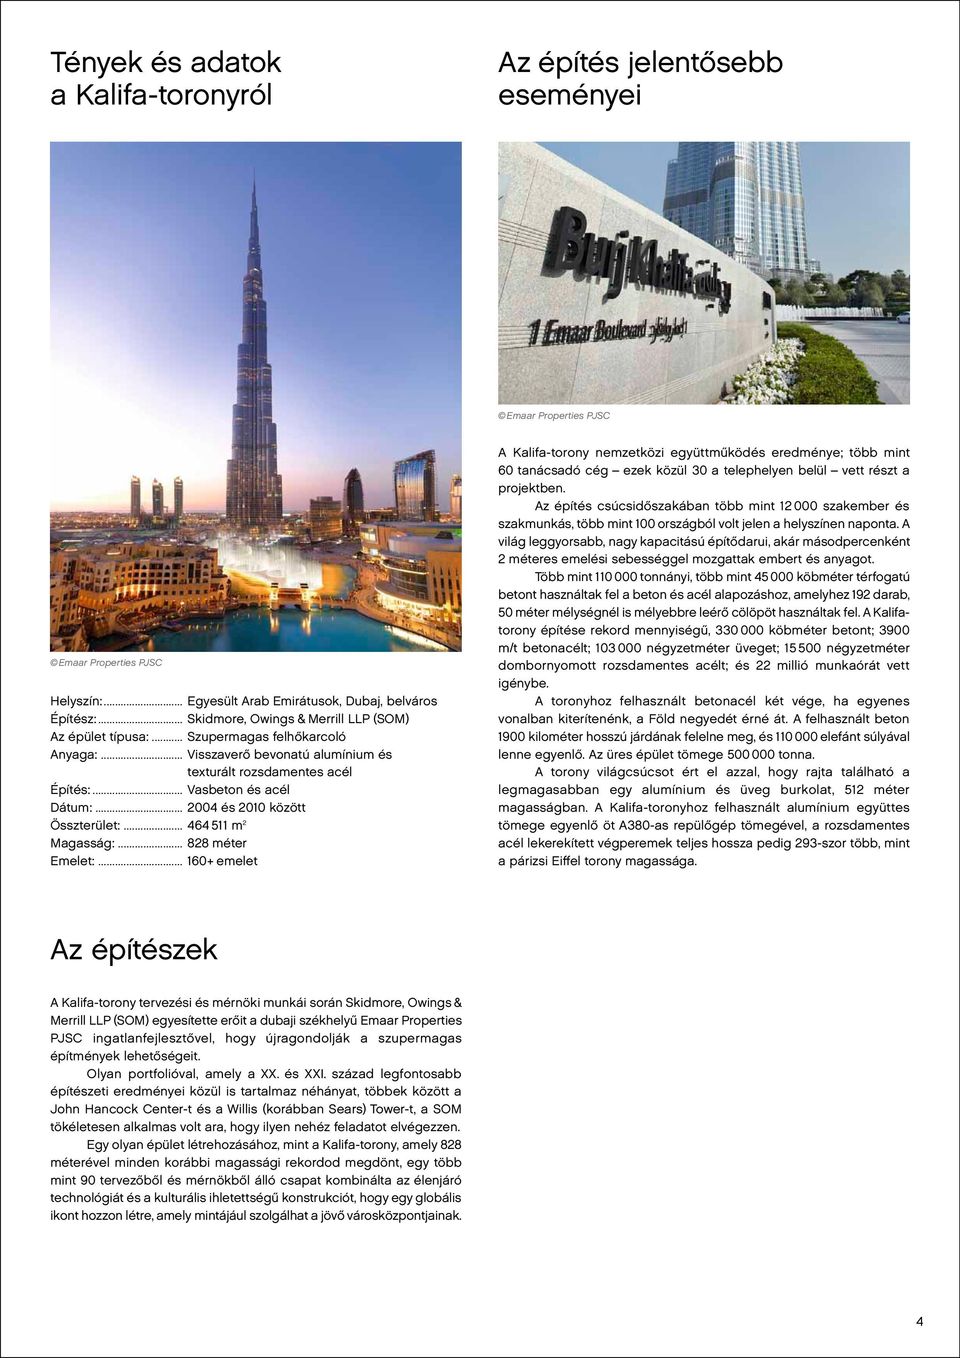 .. 828 méter Emelet:... 160+ emelet A Kalifa-torony nemzetközi együttműködés eredménye; több mint 60 tanácsadó cég ezek közül 30 a telephelyen belül vett részt a projektben.